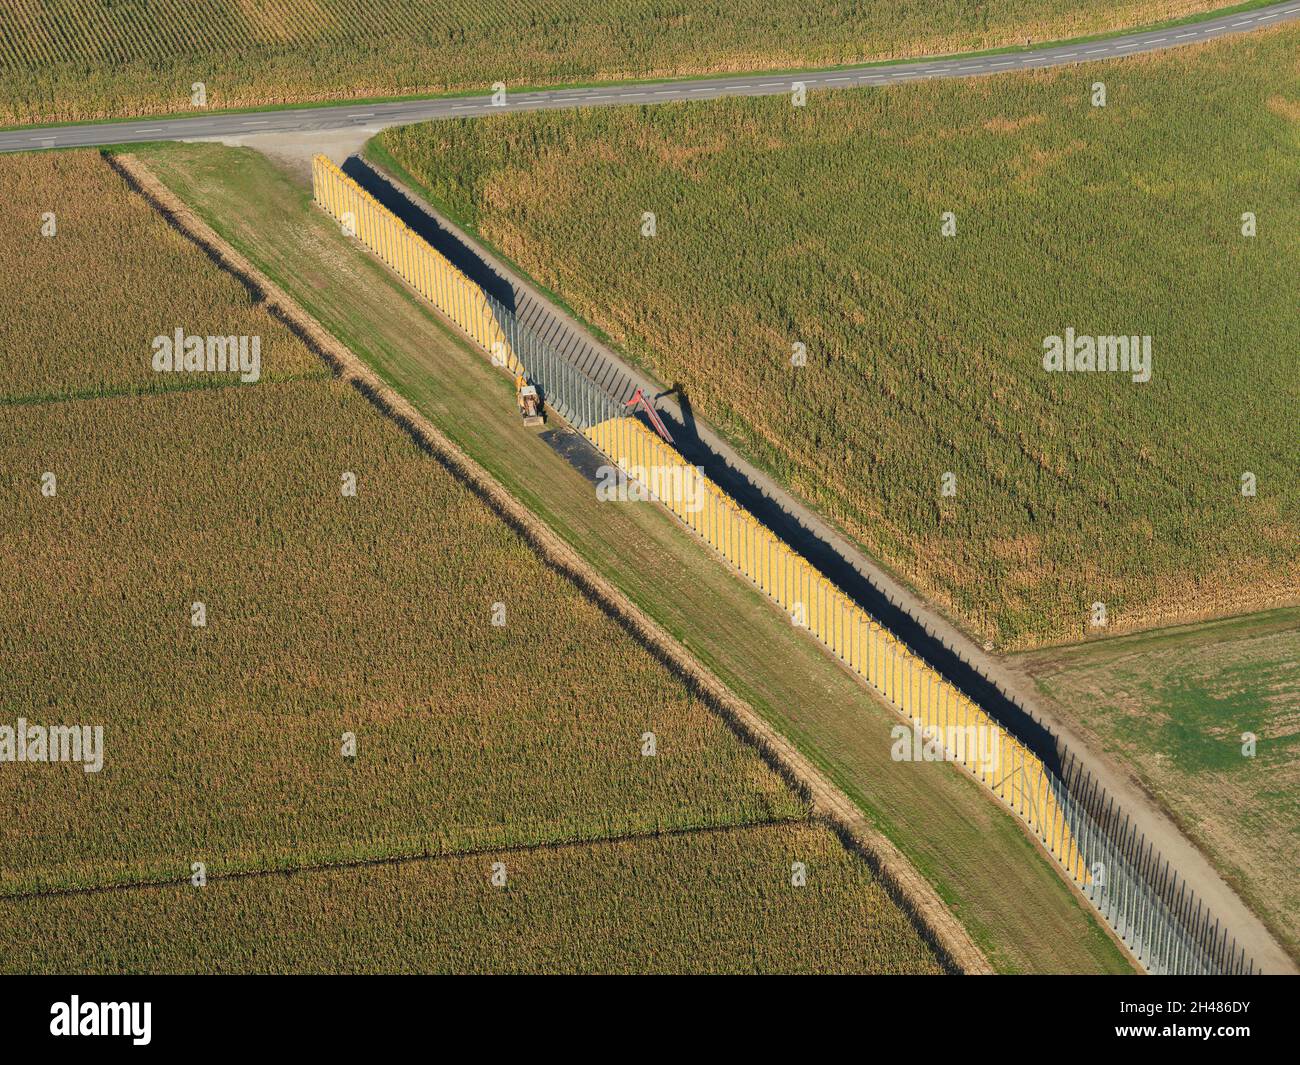 LUFTAUFNAHME. Maisähren, die in einer sehr langen Krippe gestapelt werden, um natürlich zu trocknen. Sundhoffen, Alsace, Grand Est, Frankreich. Stockfoto